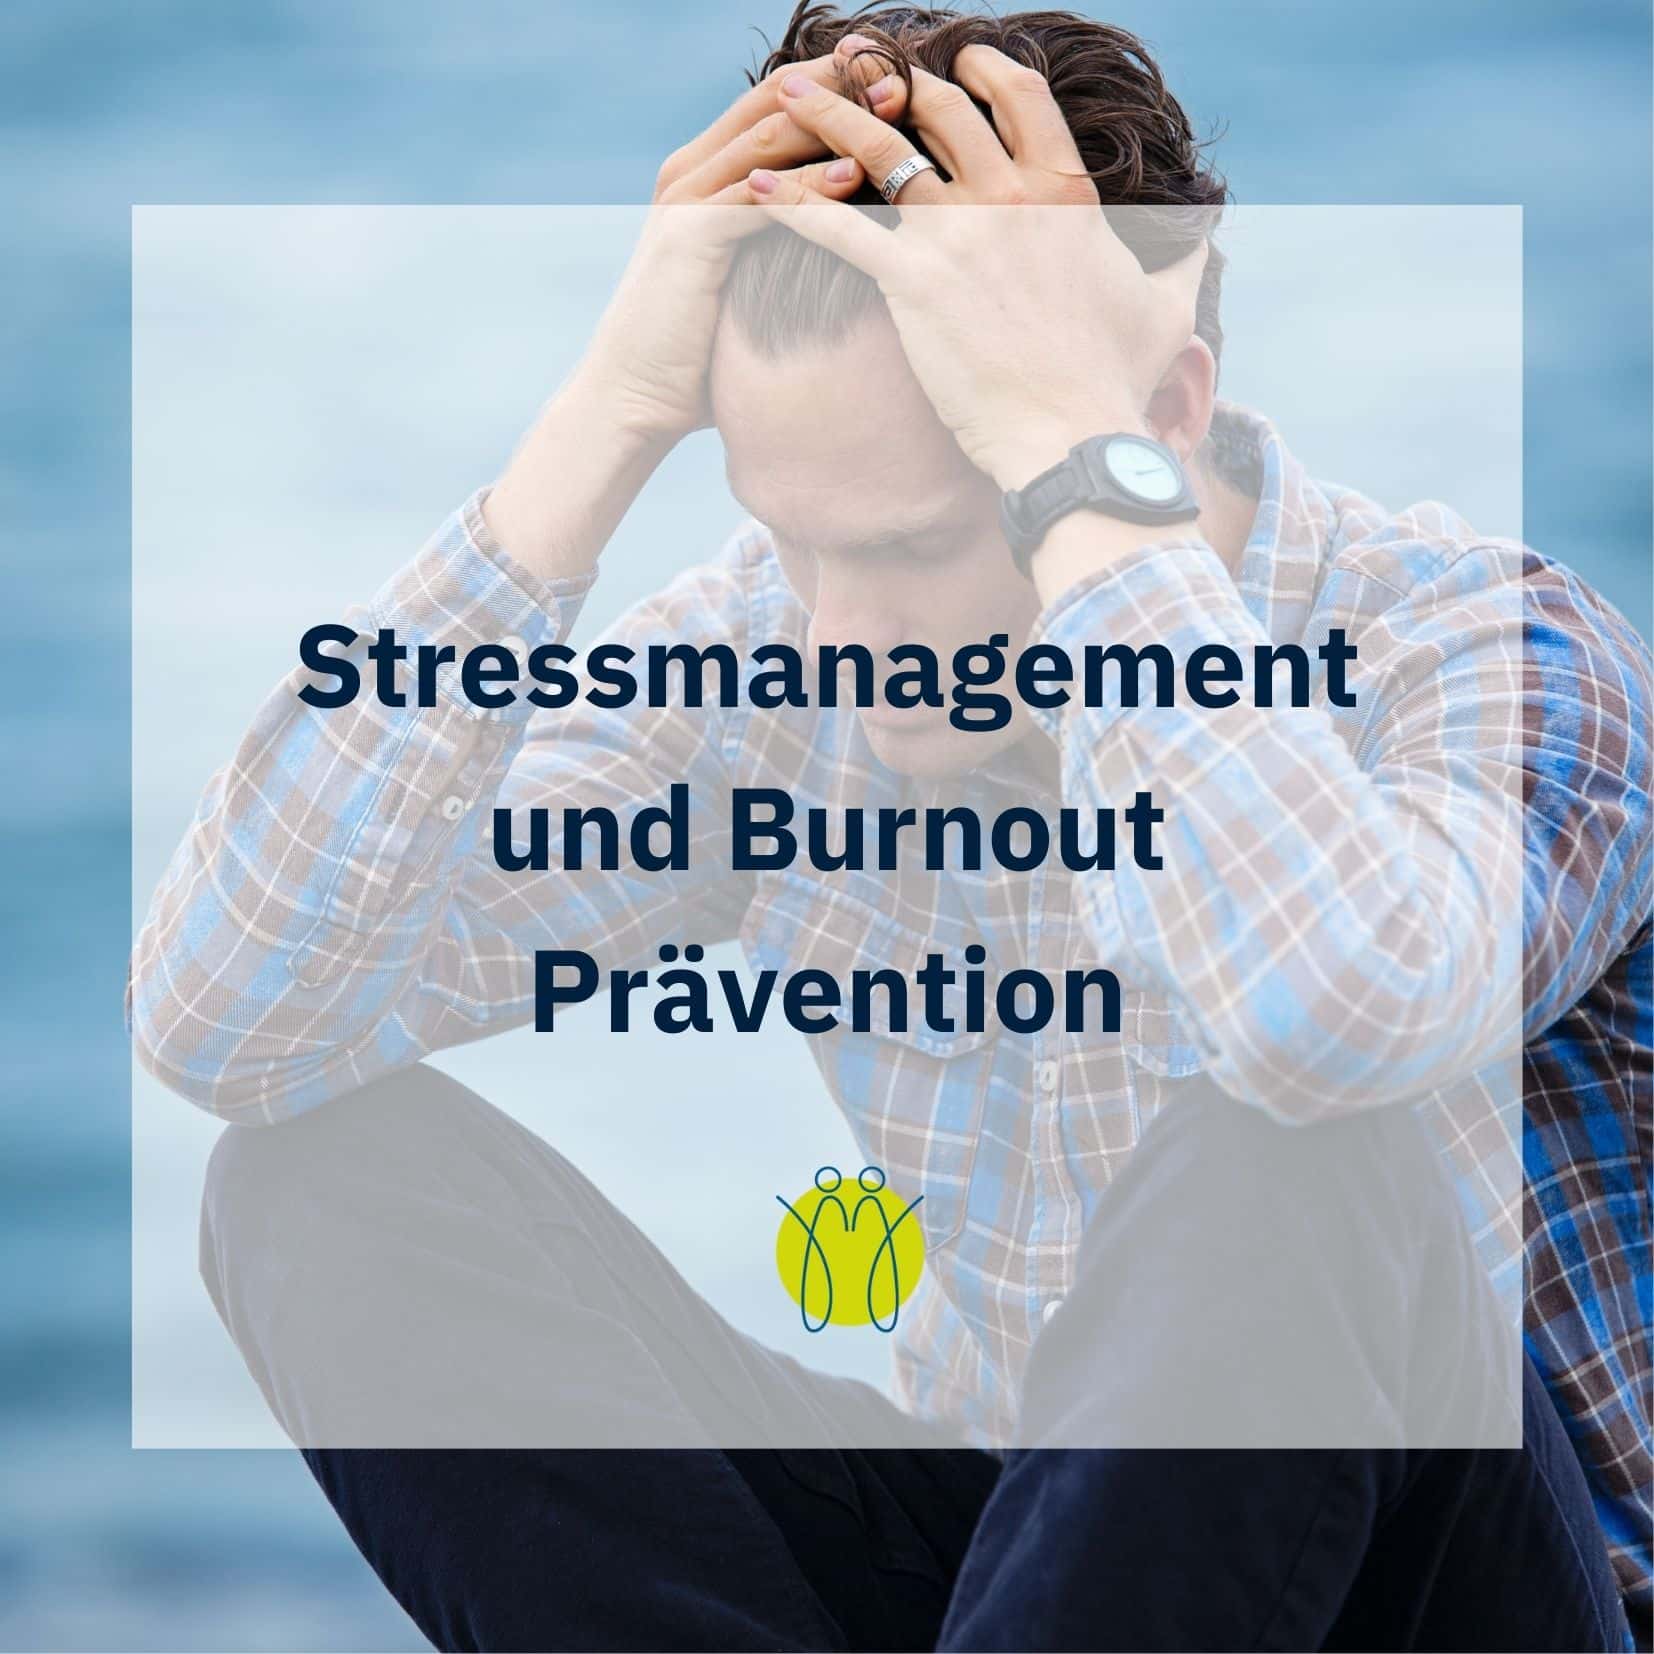 Stressmanagement, Burnout